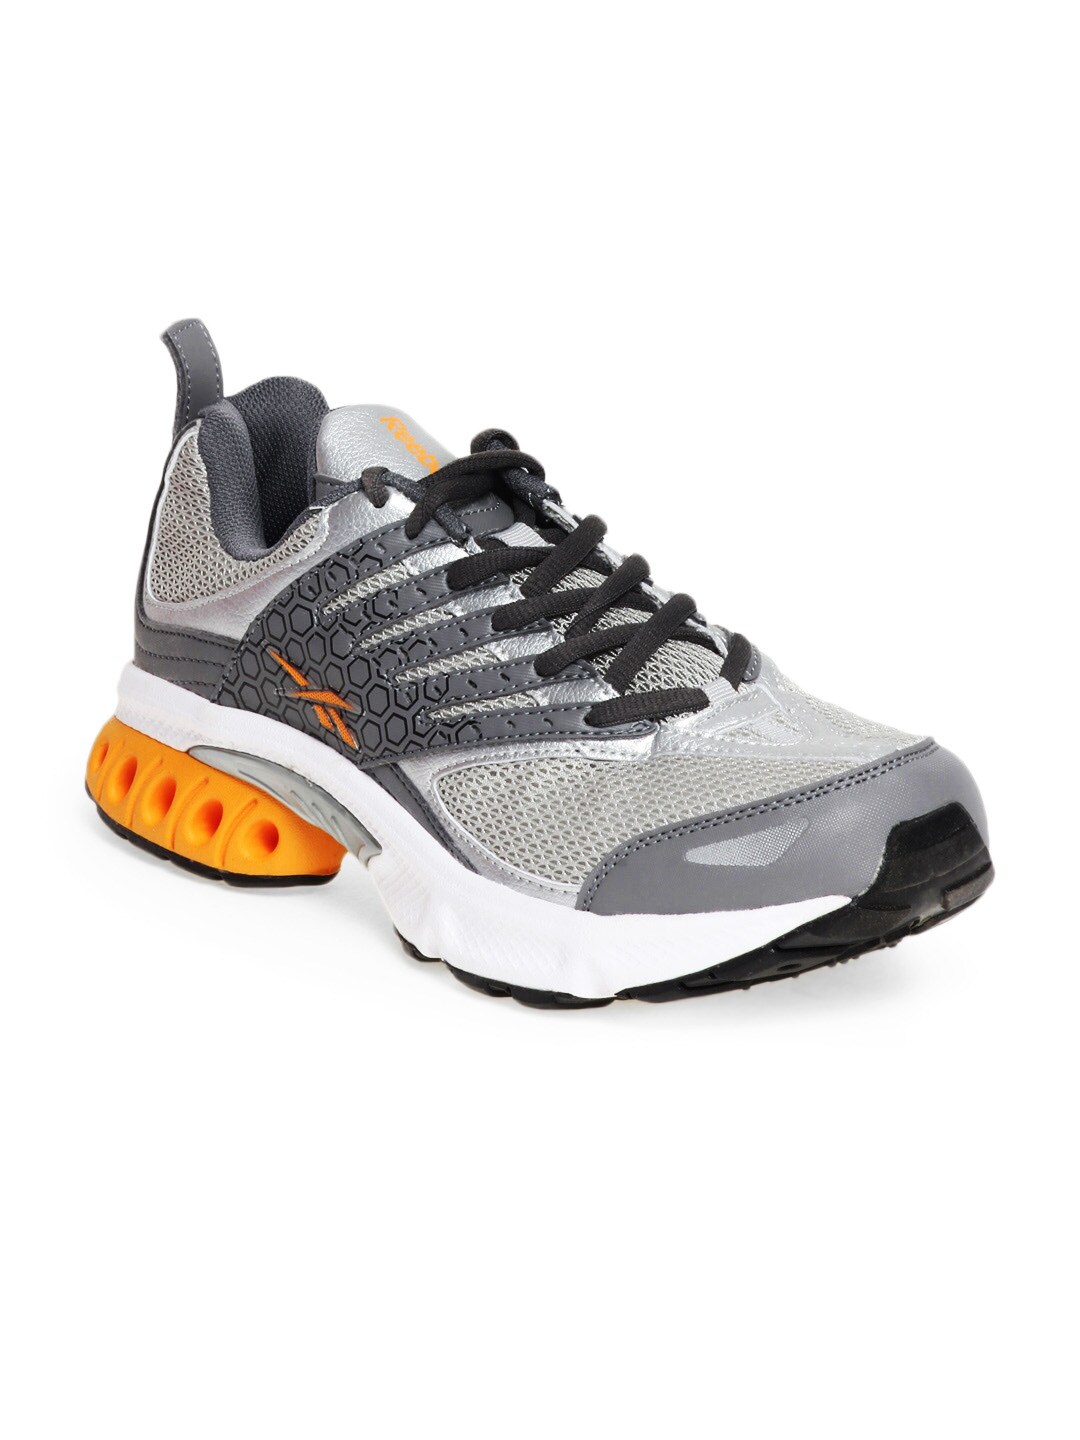 Reebok Men Grey Turbo DMX Shear Sports Shoes